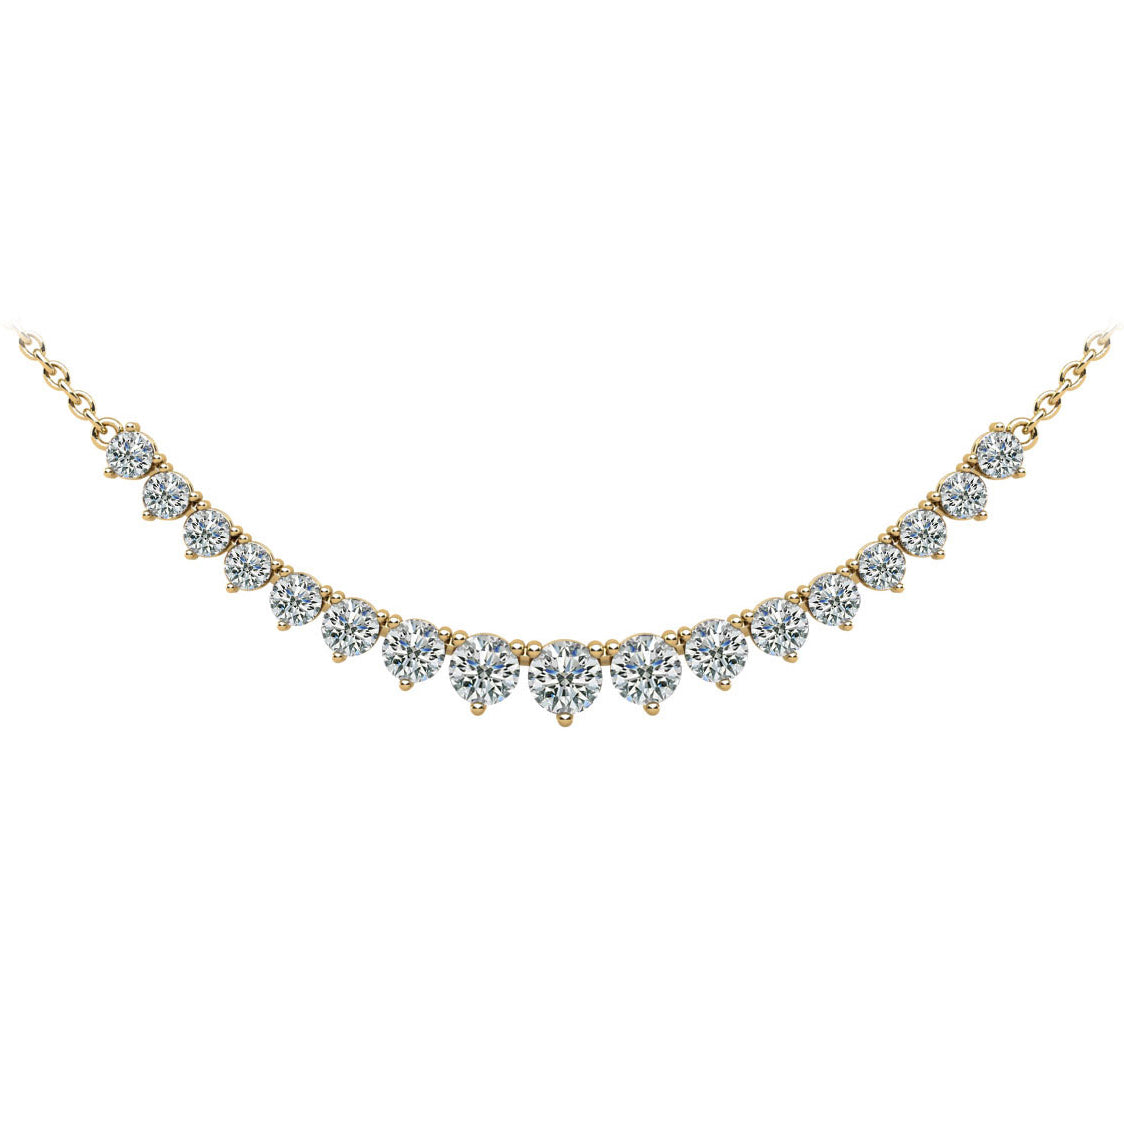 Diamond Row Necklace - 3ct